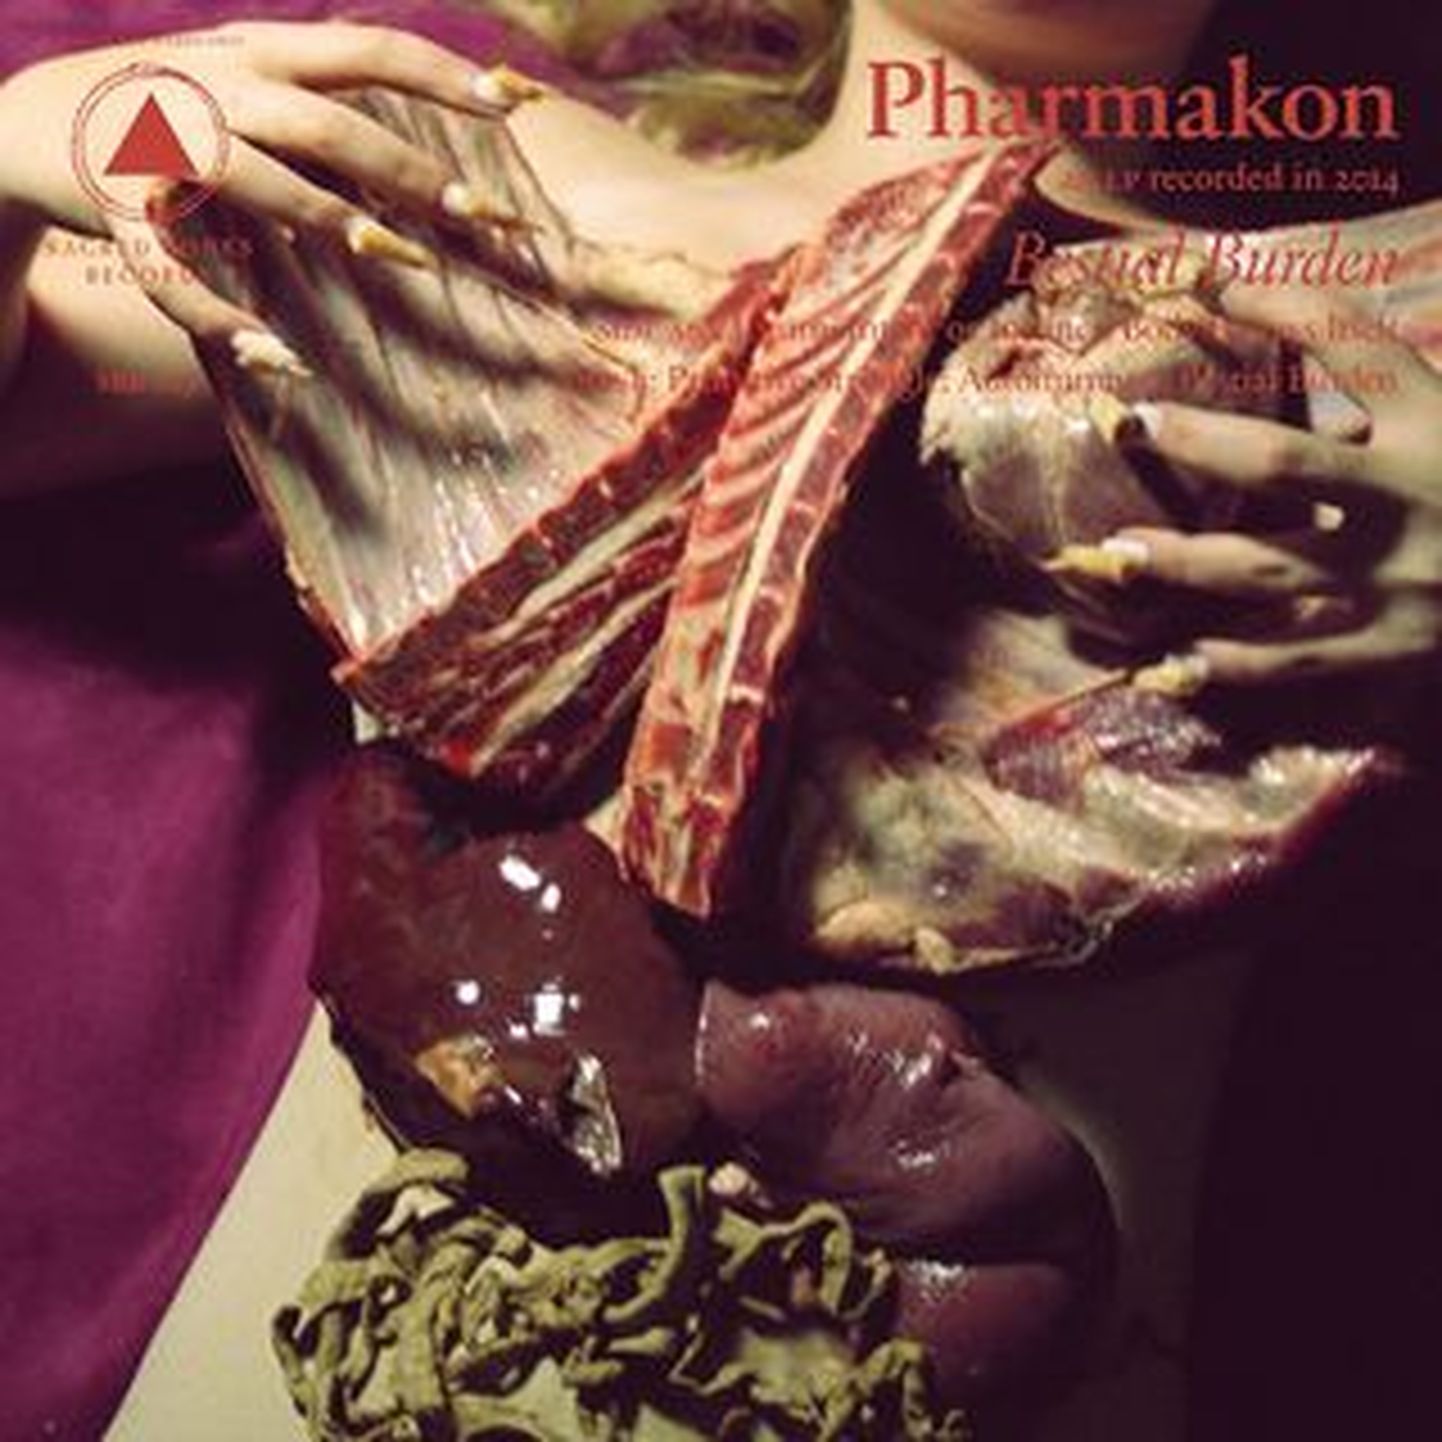 Pharmakon-Bestial Burden